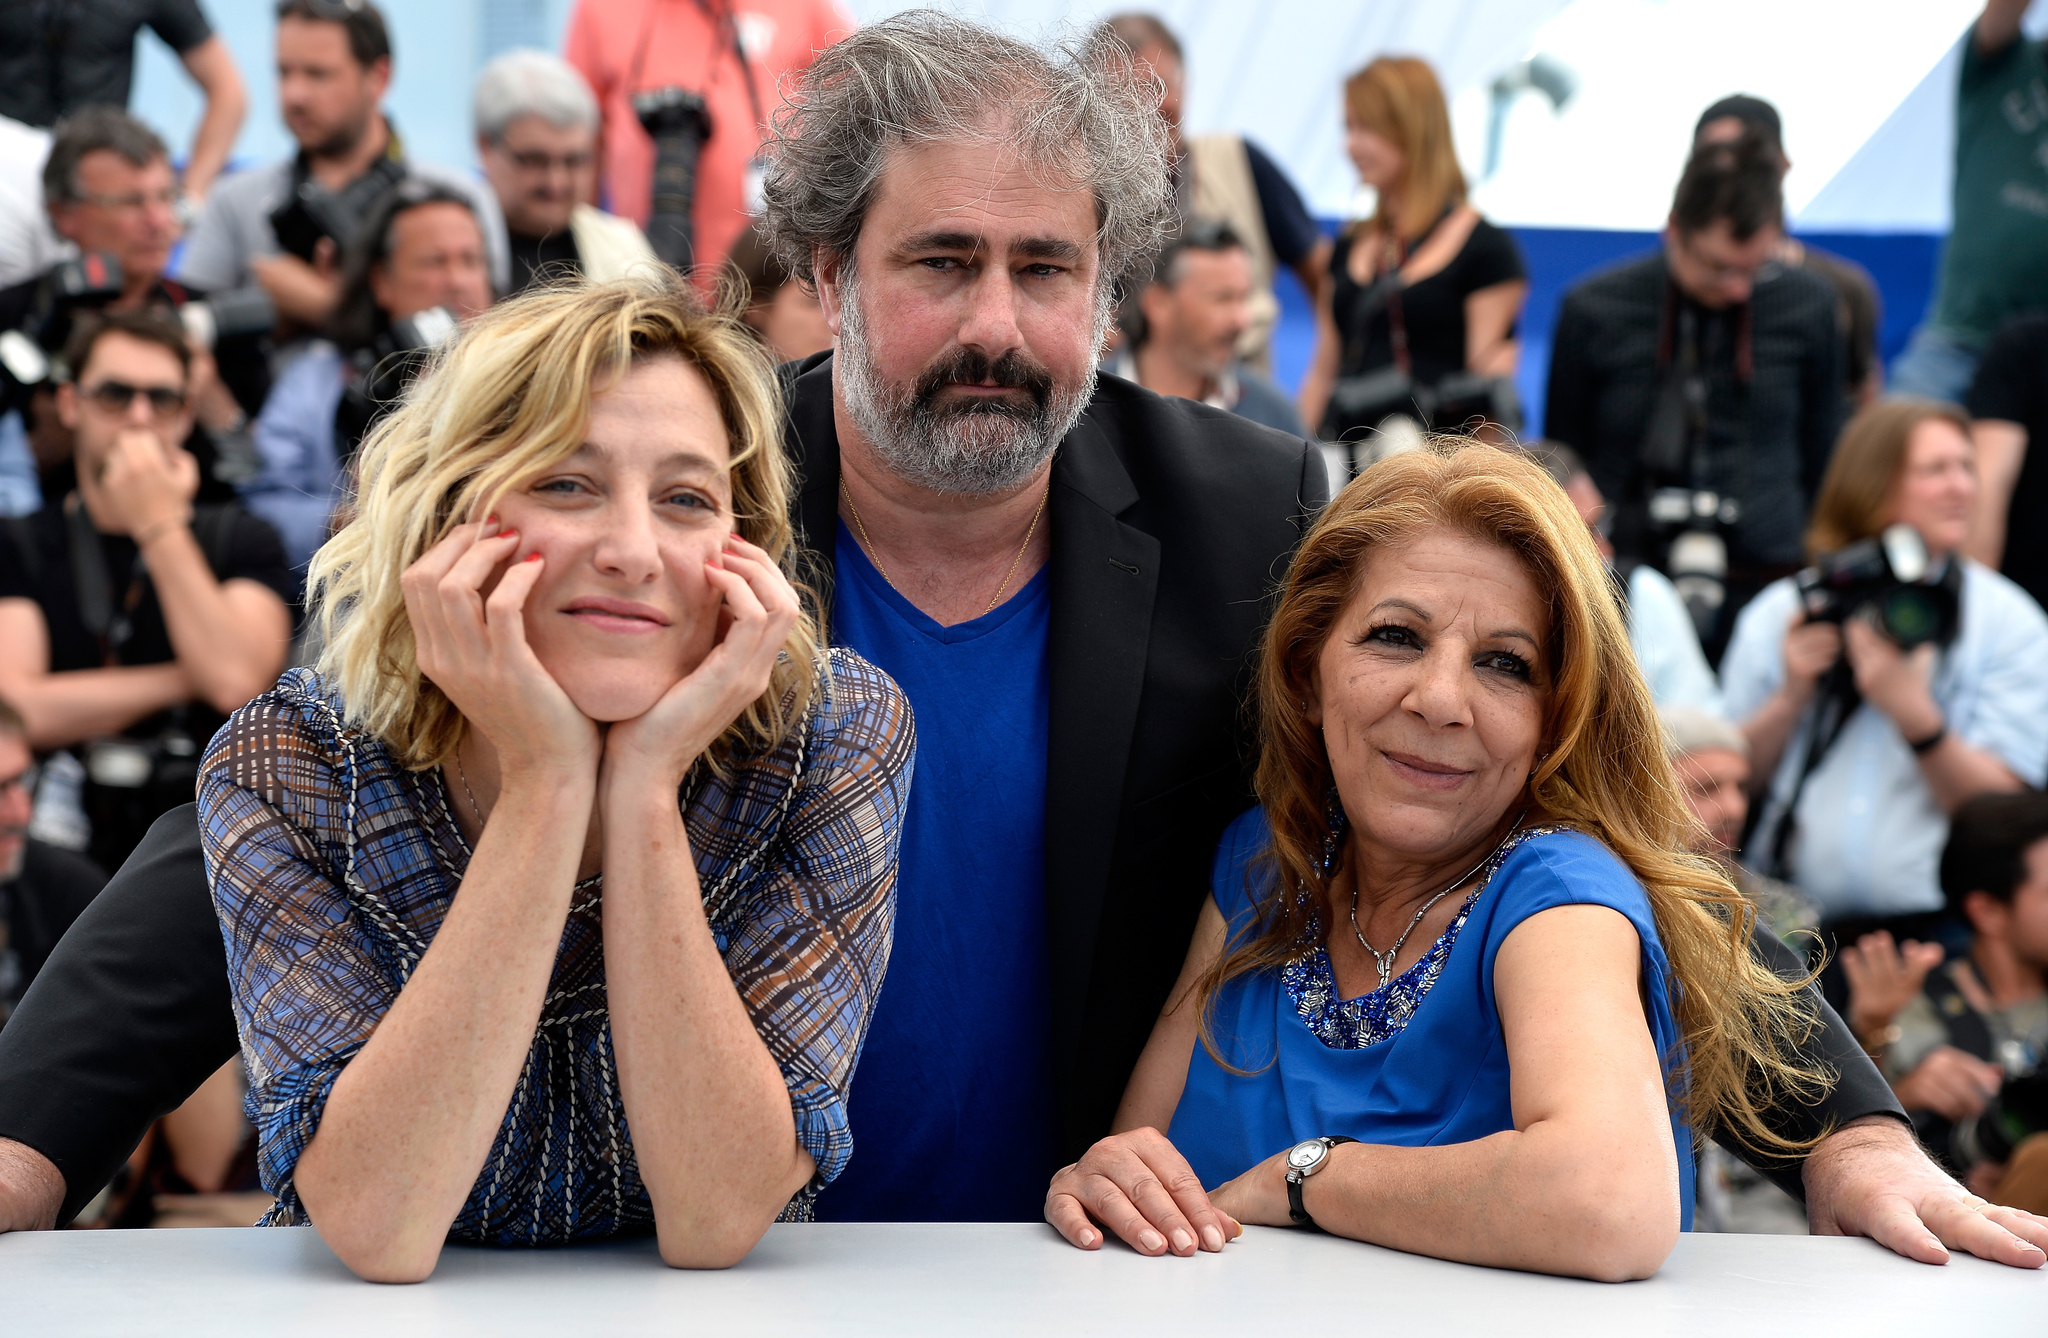 Valeria Bruni Tedeschi, Tassadit Mandi and Gustave Kervern at event of Asphalte (2015)